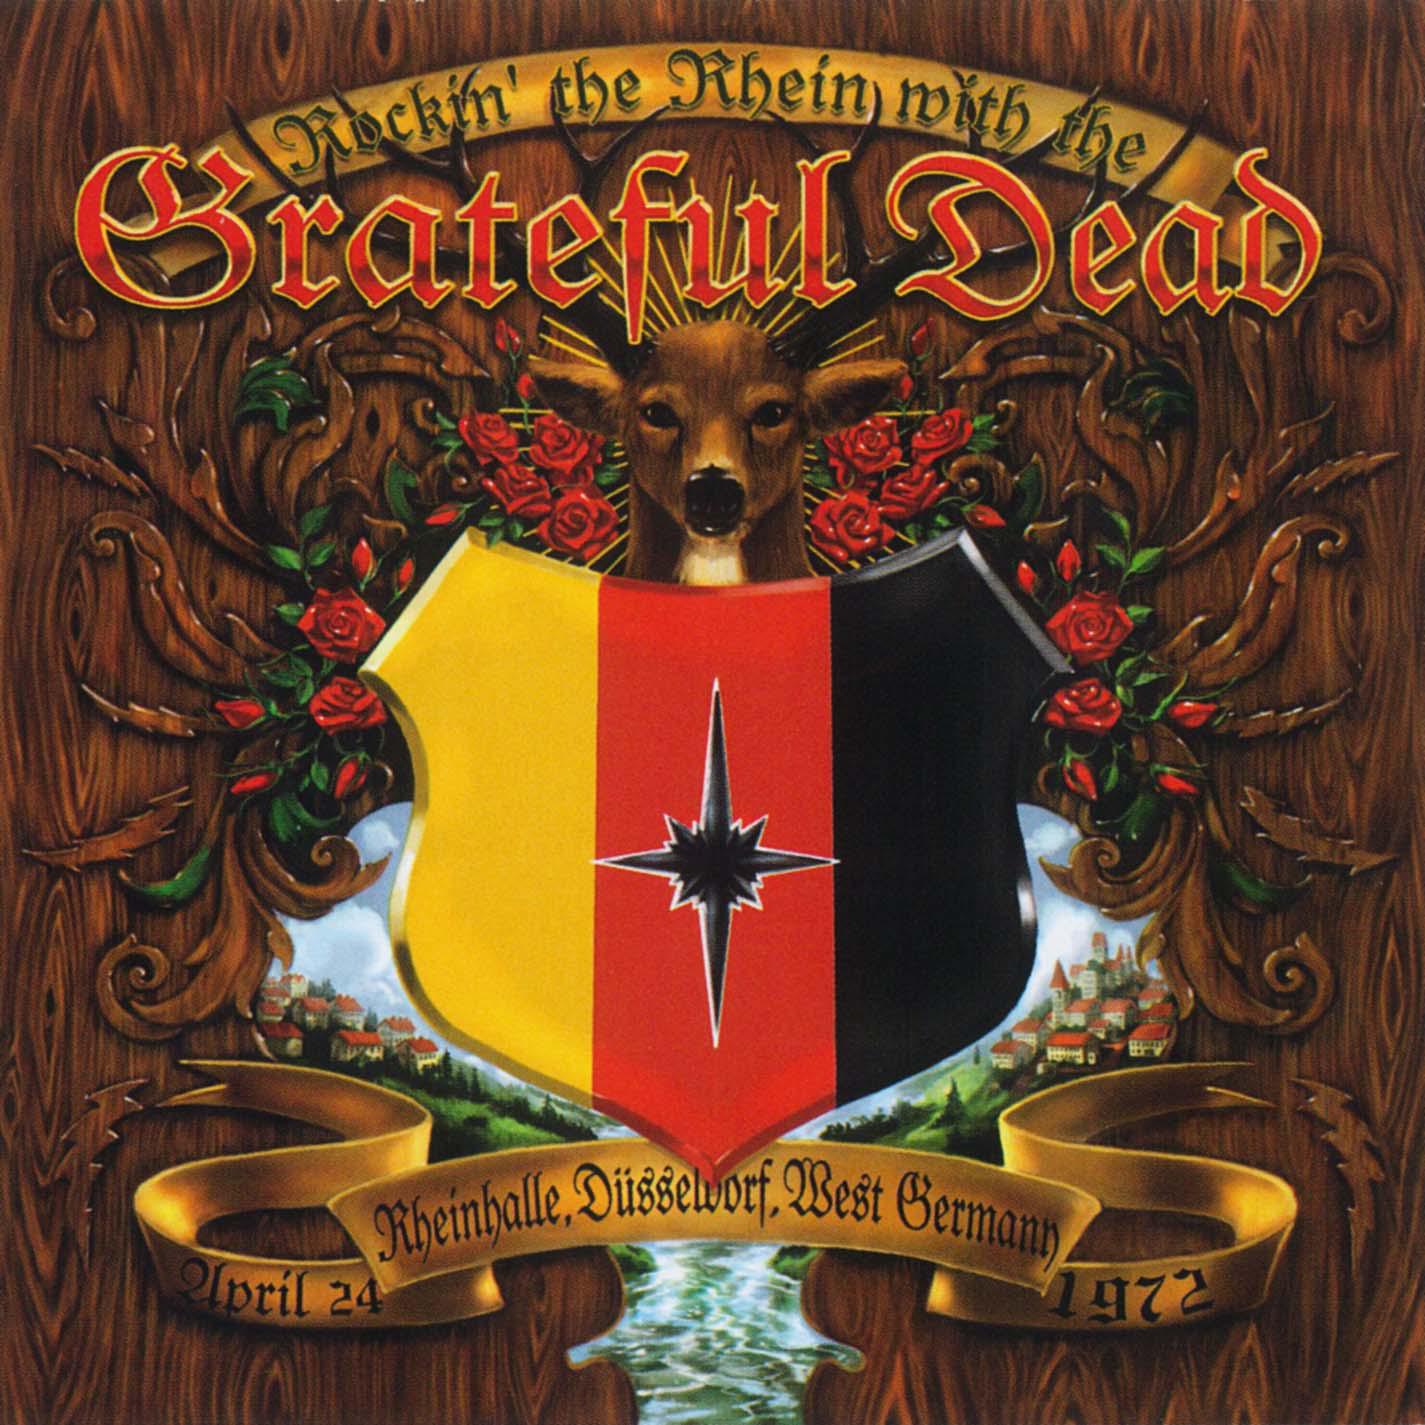 Rockin' The Rhein With The Grateful Dead: Rheinhalle - Dusseldorf, West Germany, 4/24/72专辑